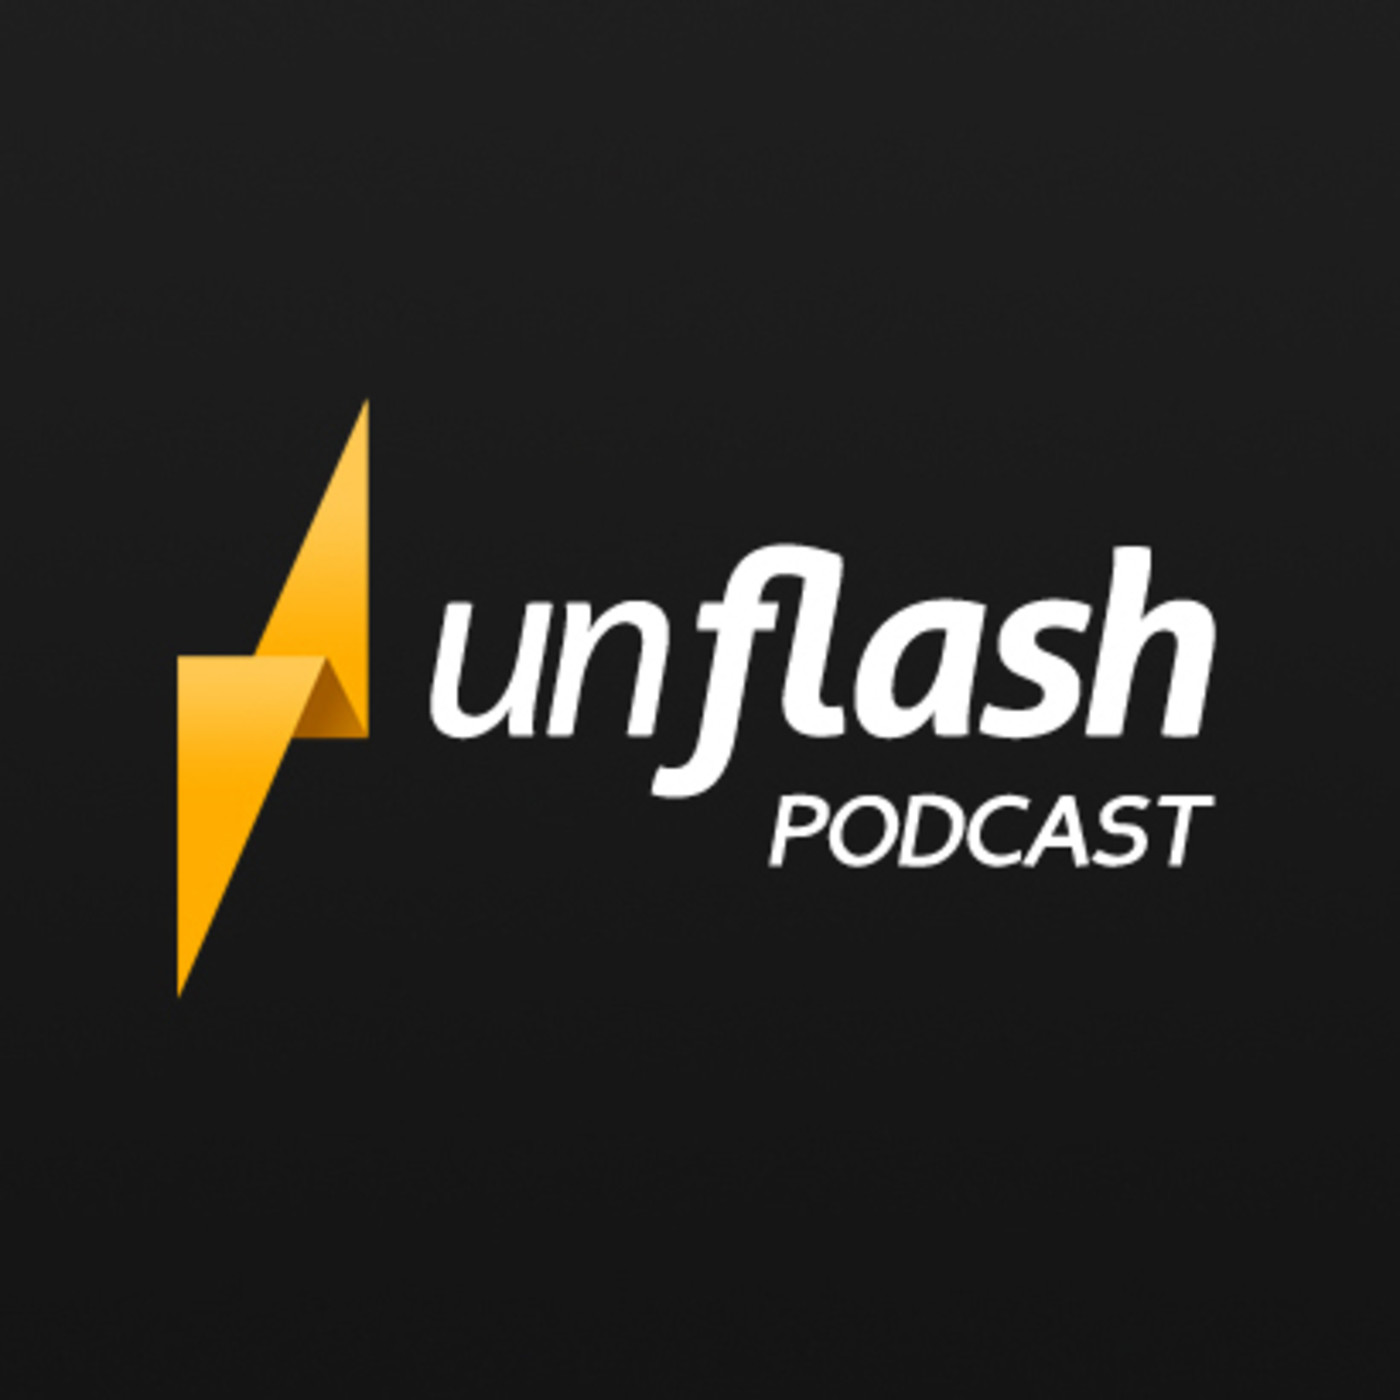 Unflash Podcast 01 - Entrevista a Mosca El Rey De Los Mortales